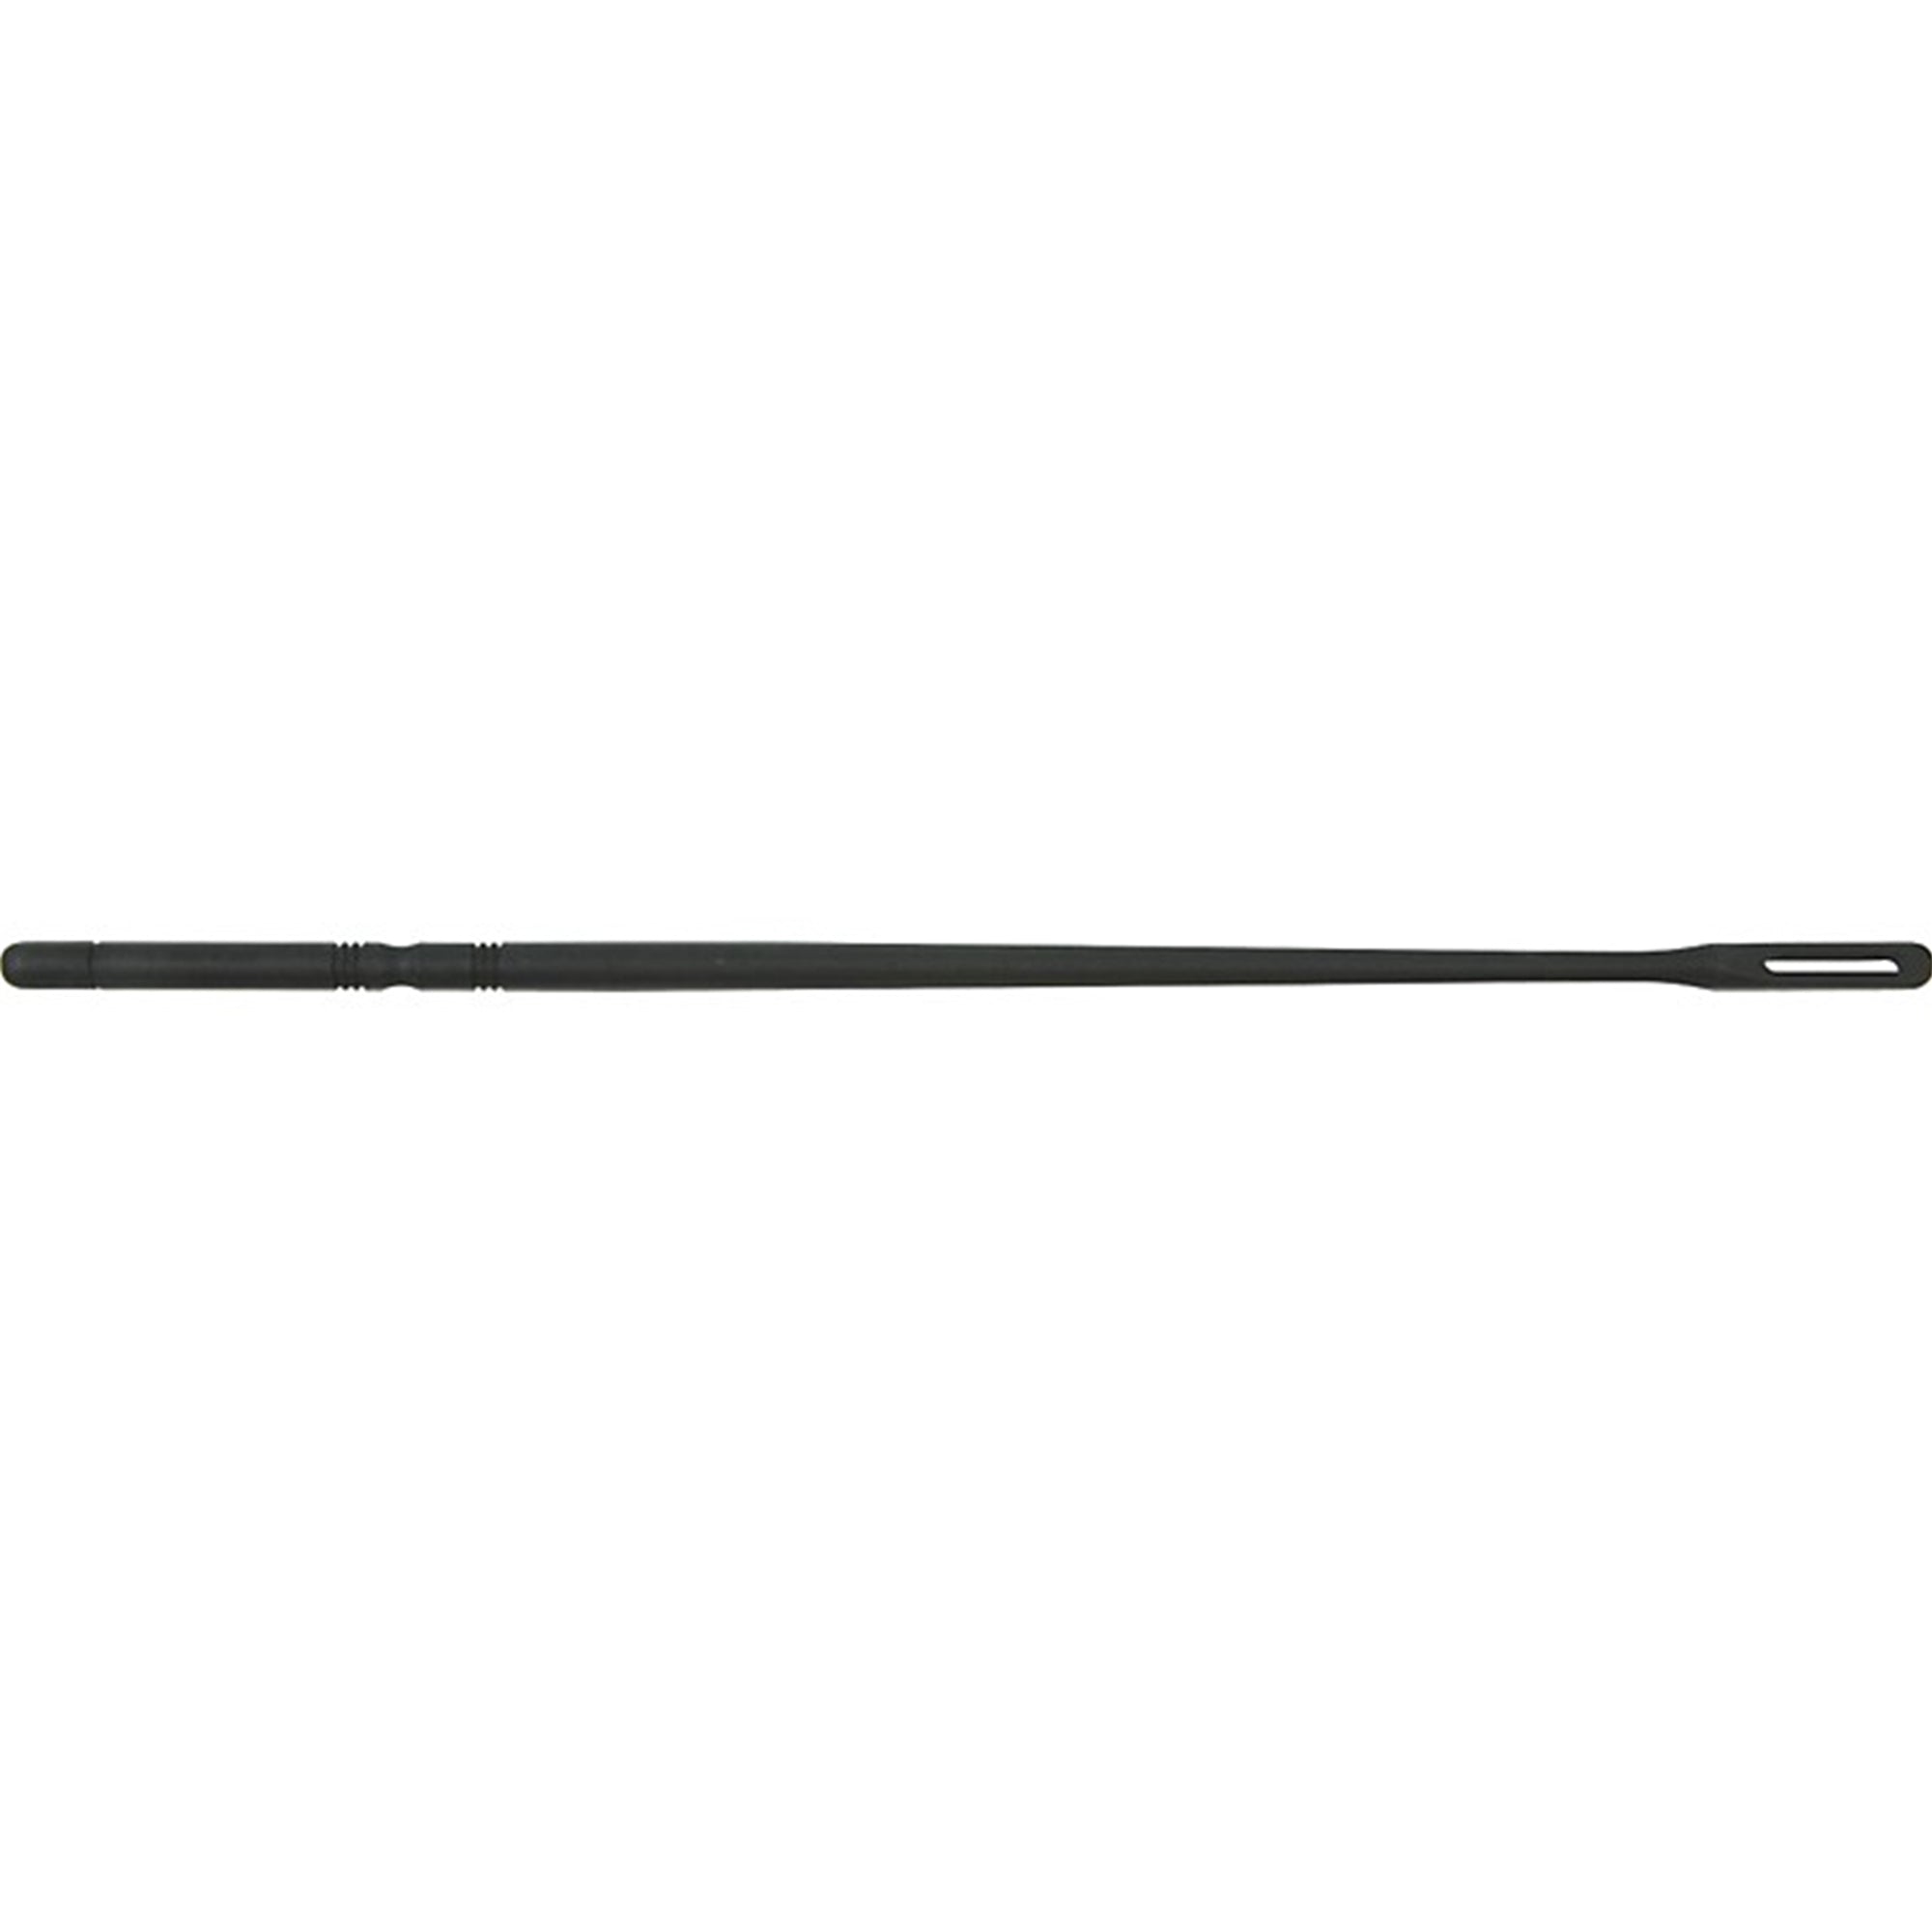 YAMAHA YAC1661P Flute Plastic Cleaning Rod